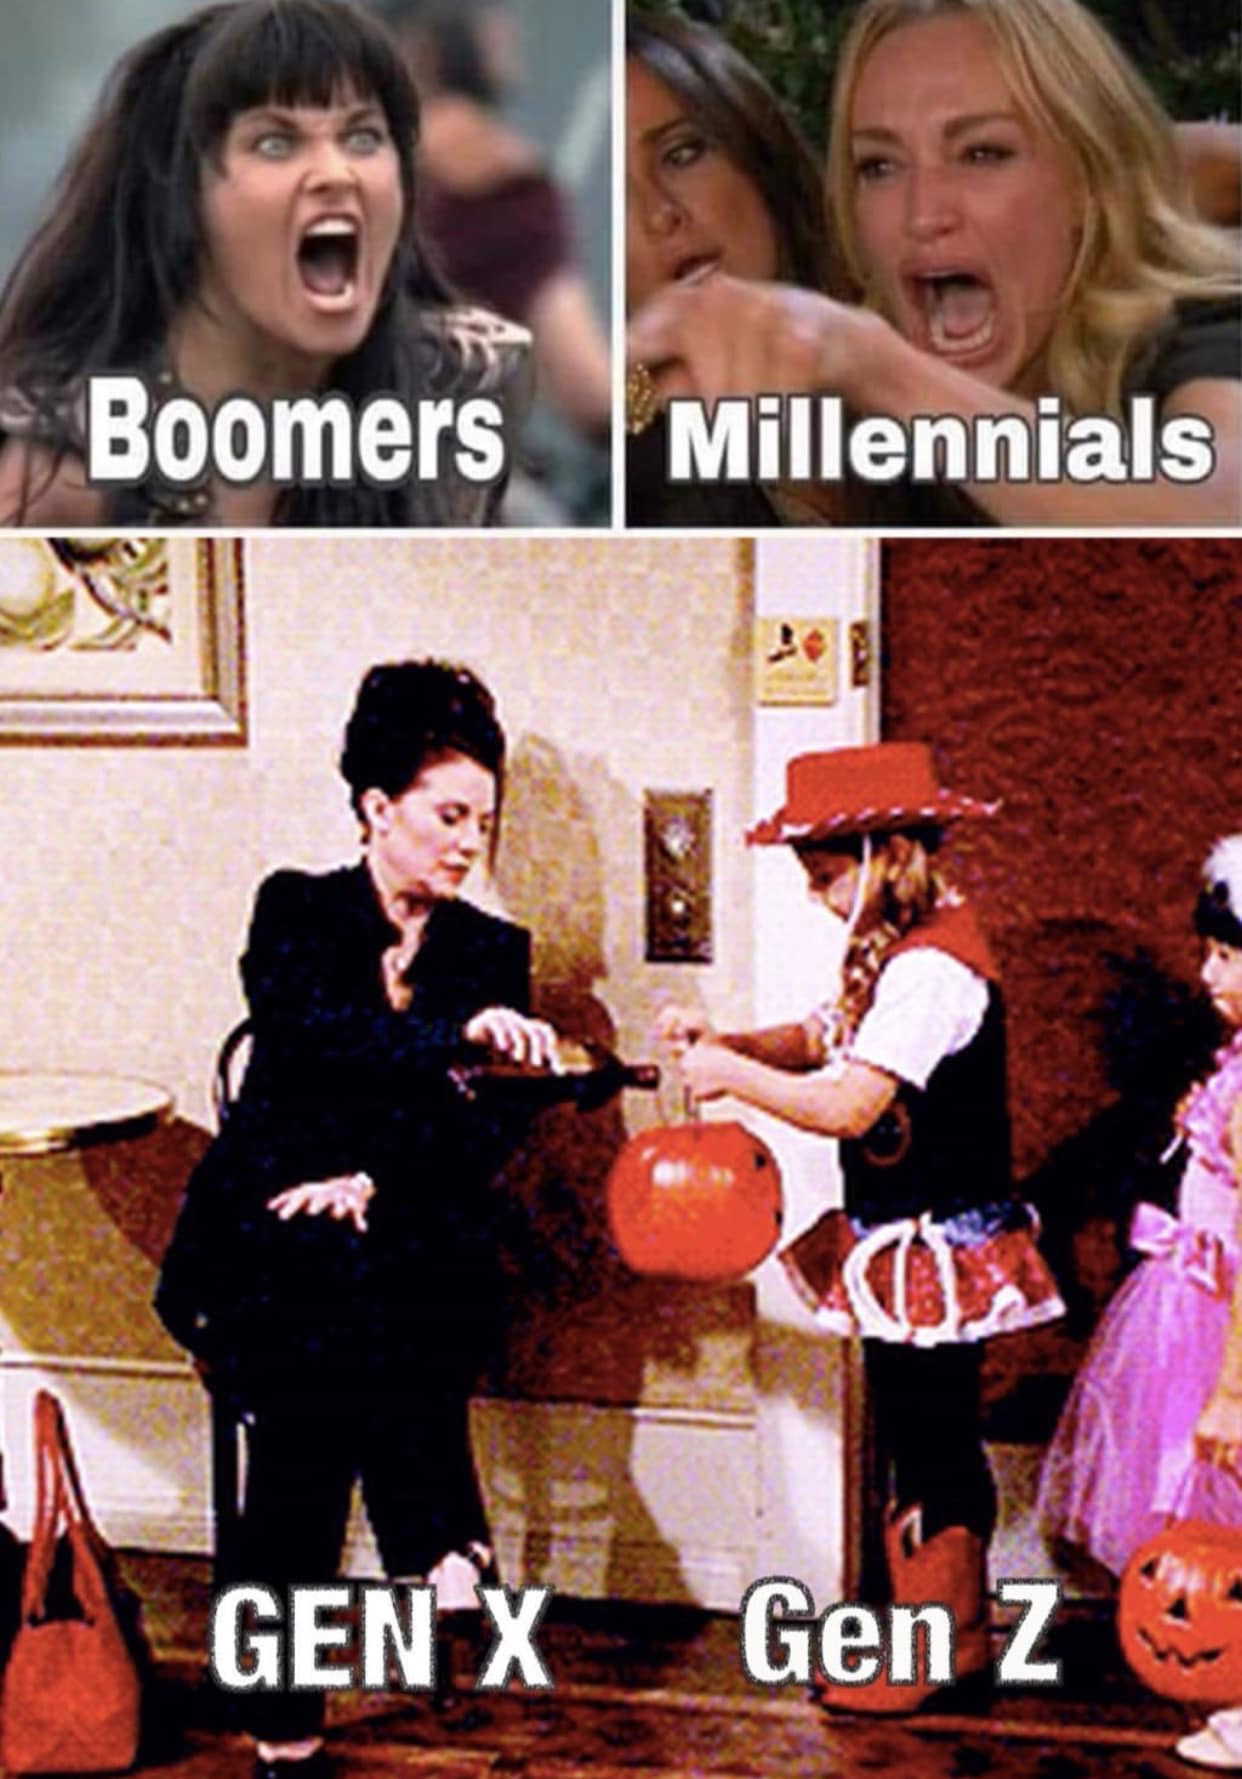 boomers millennials gen x gen z meme - Boomers Millennials Gen X Gen Z